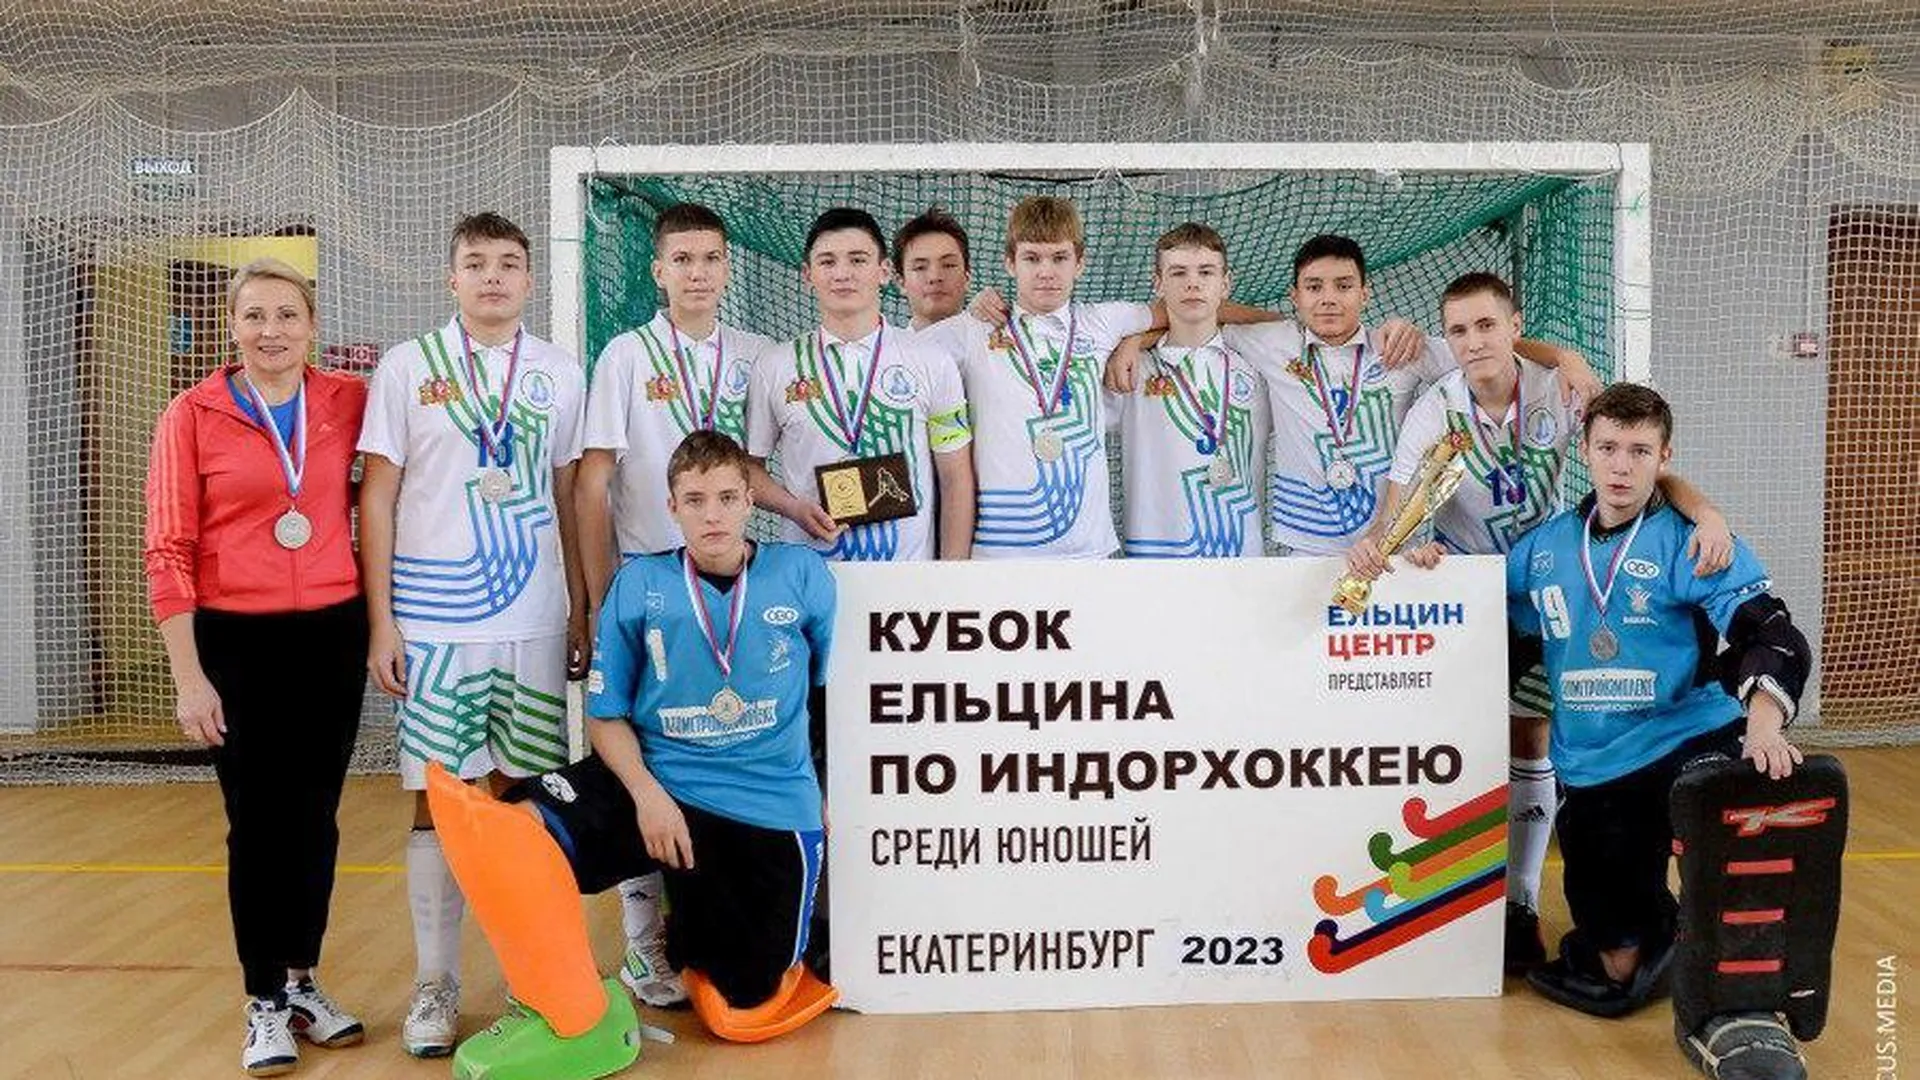 Подмосковная команда стала победителем юбилейного Кубка Ельцина по индорхоккею